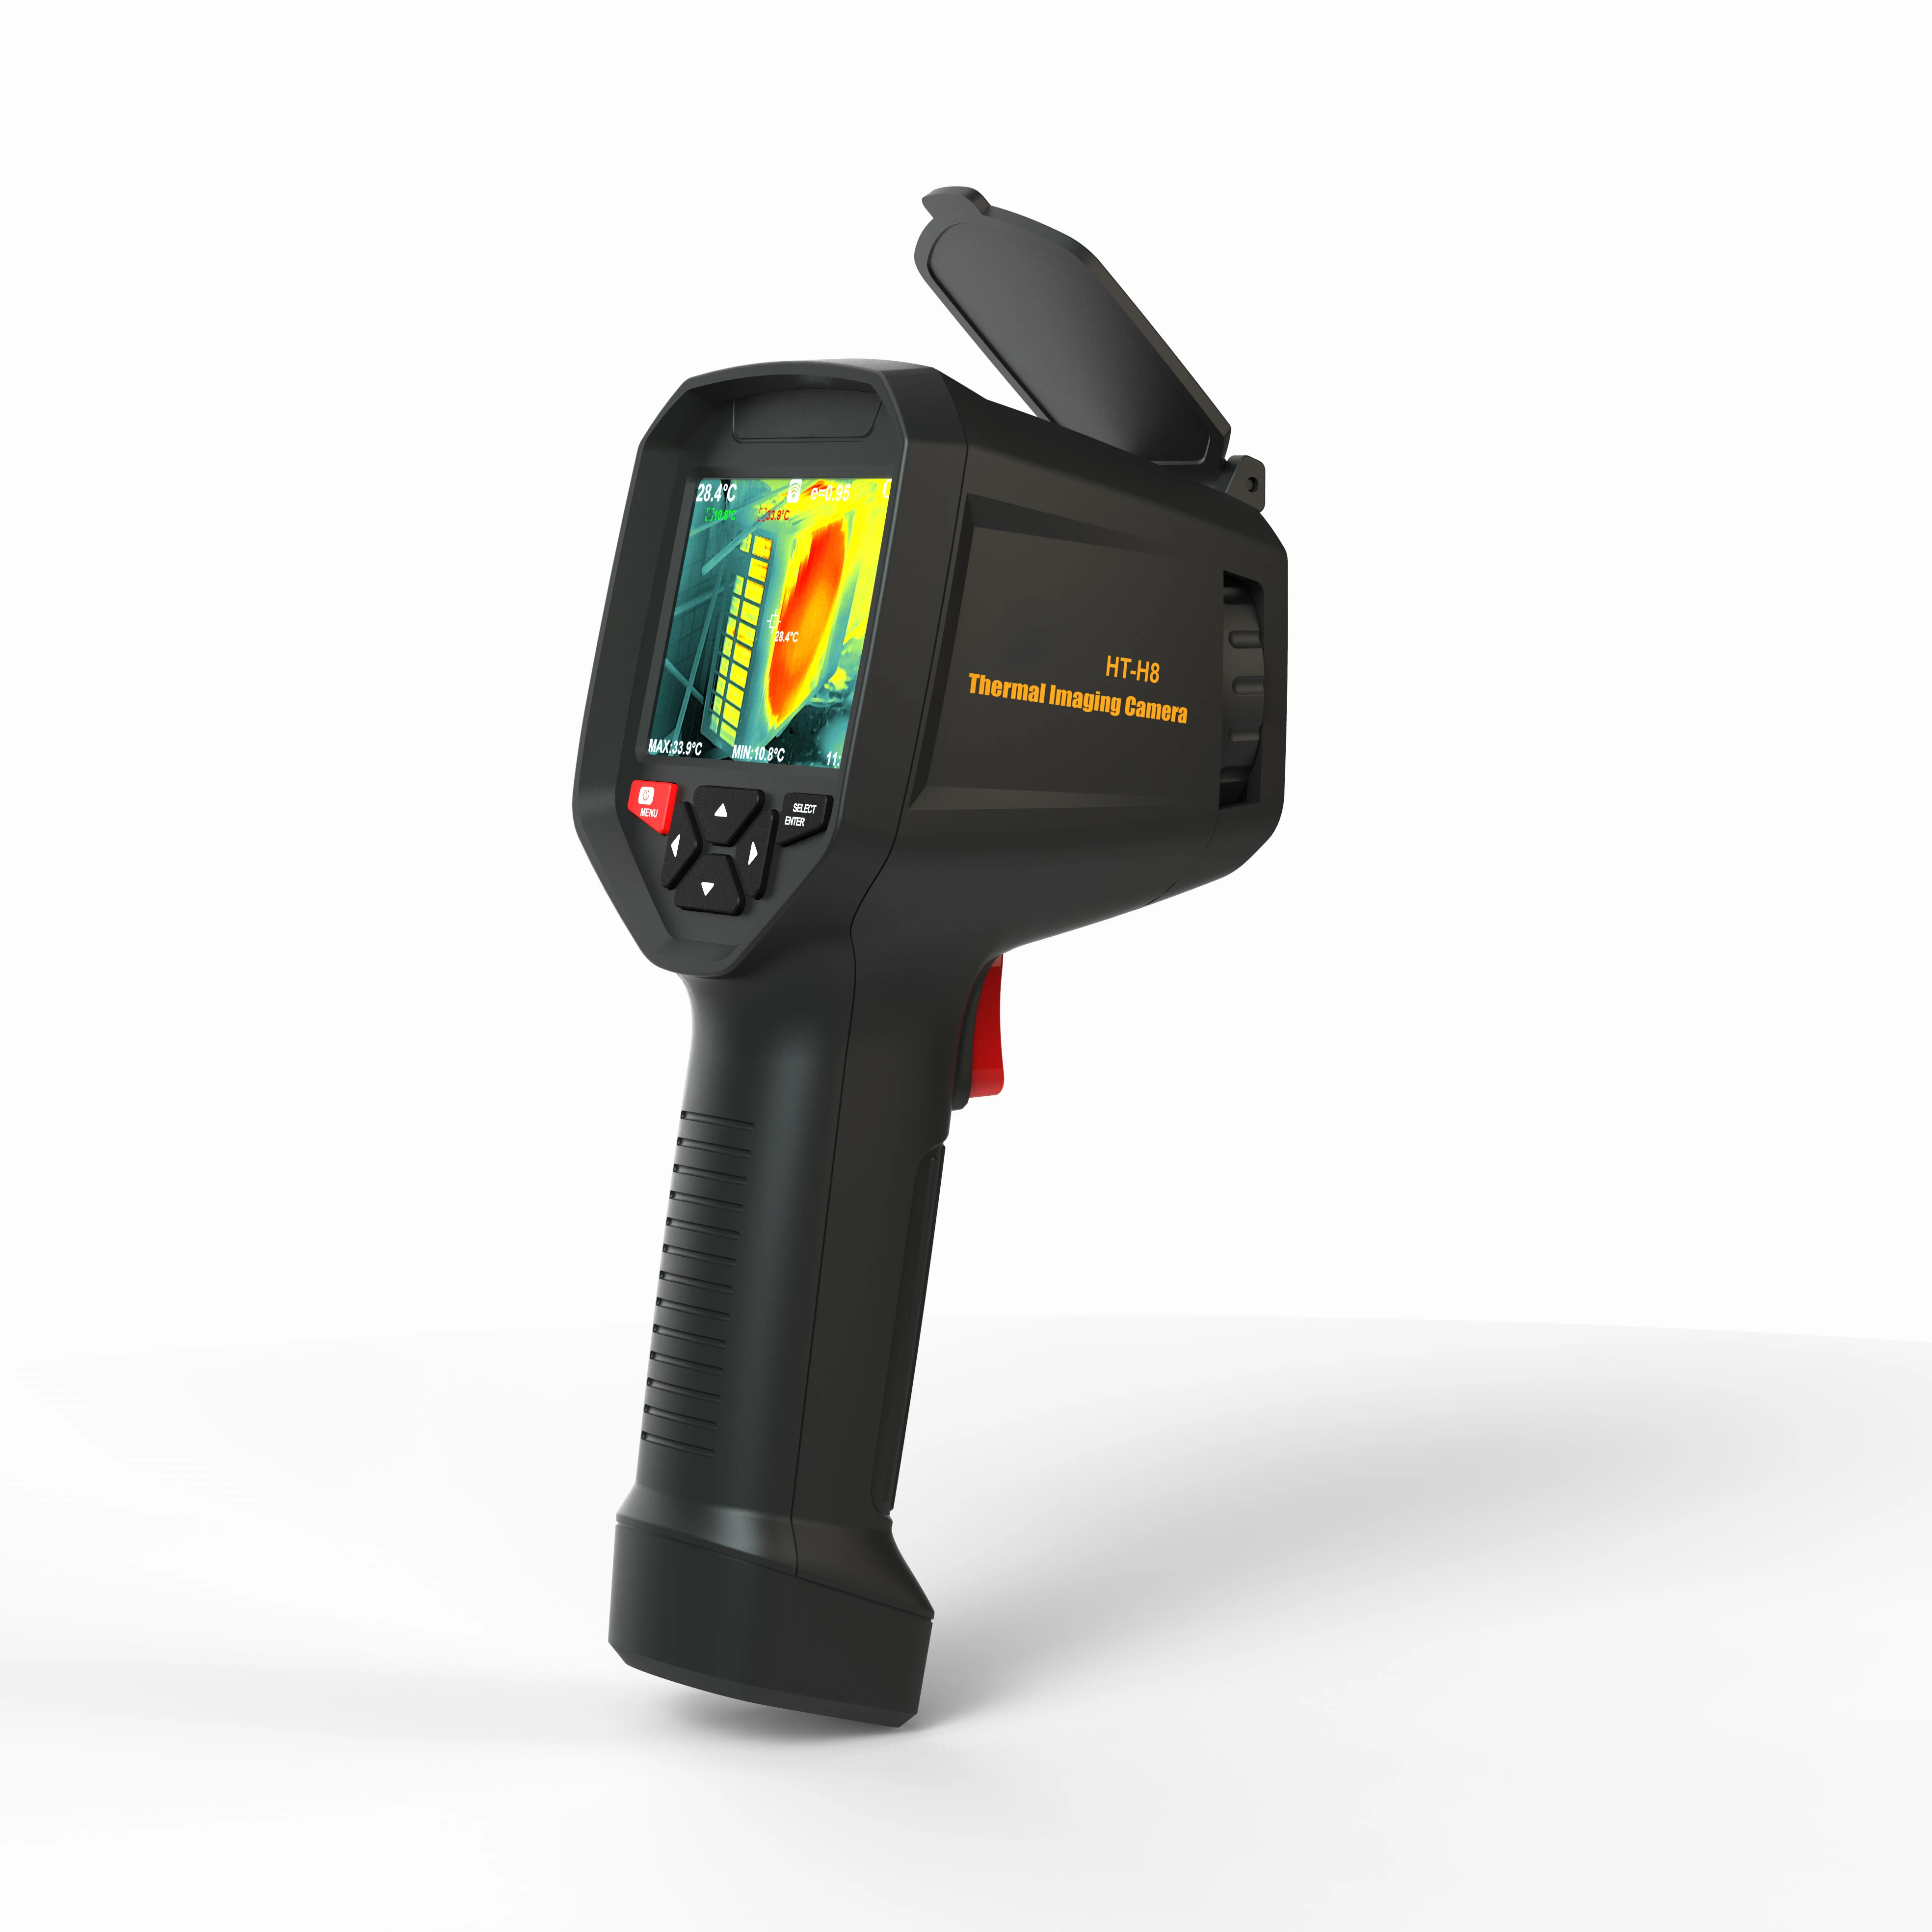 Hti-Cámara de imagen térmica infrarroja con WIFI, termómetro de mano con USB, probador de tubo de calefacción de pared y suelo, HT-H8